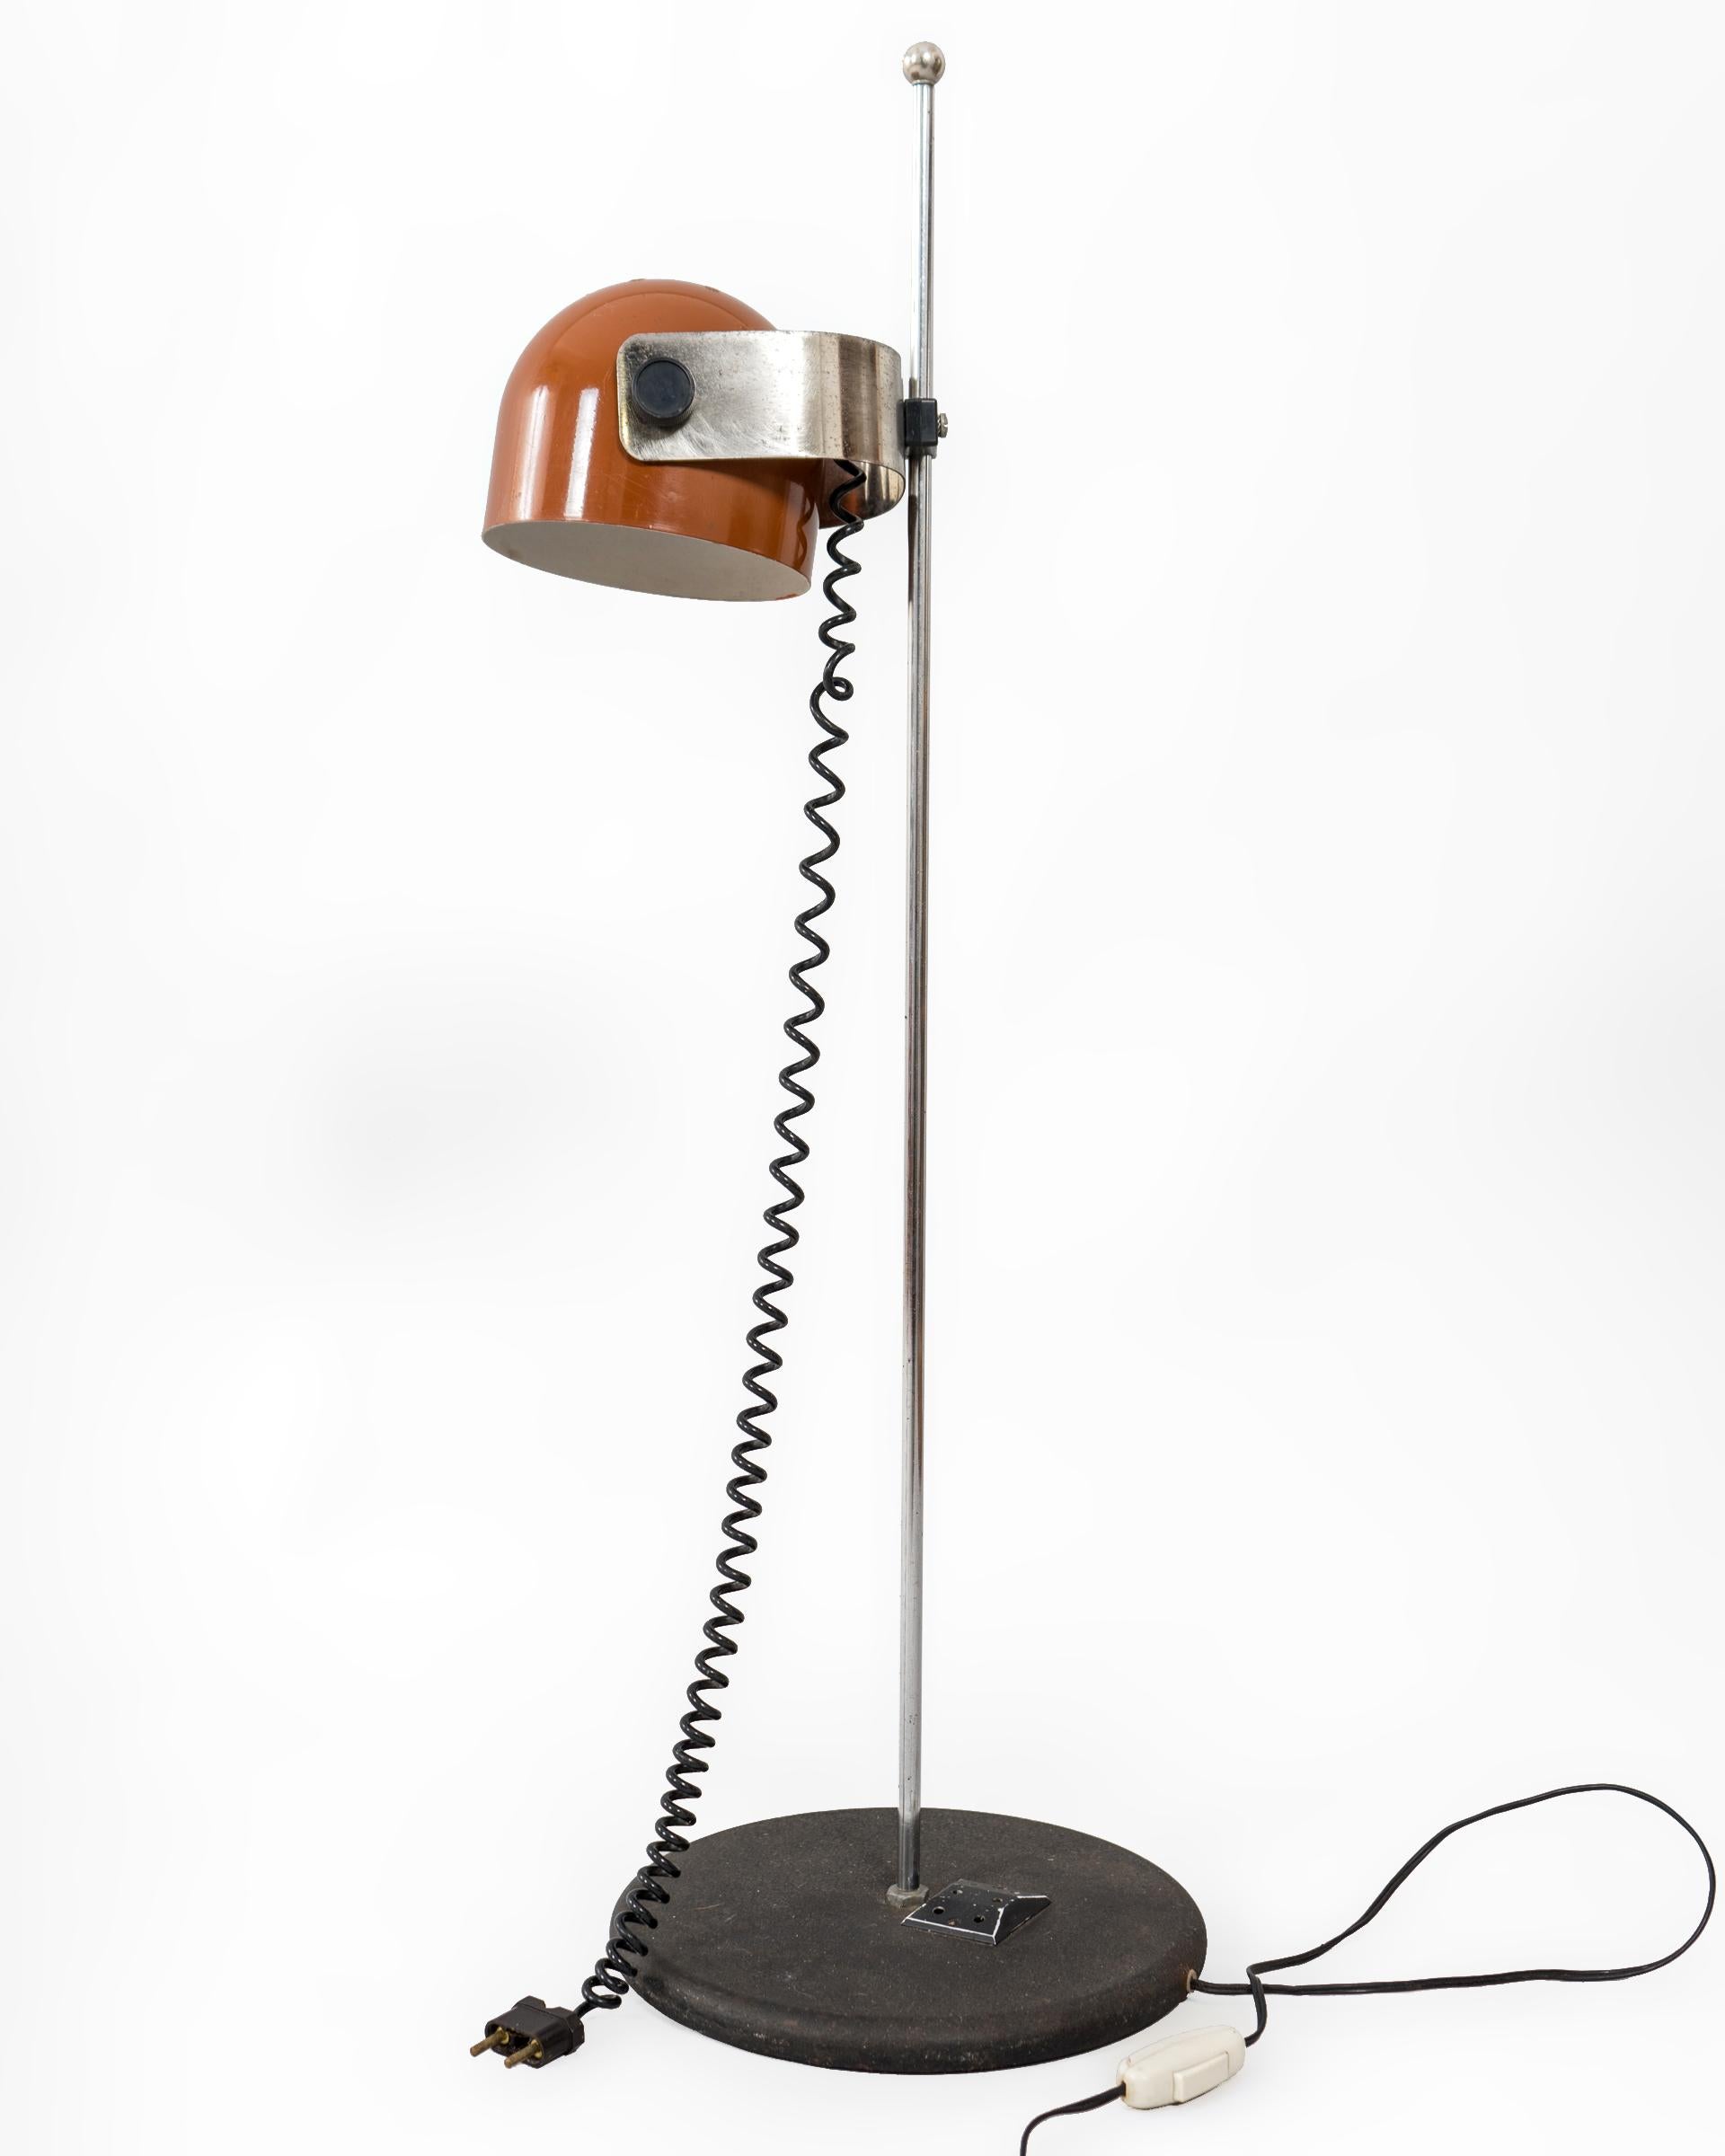 Lámpara de mesa italiana de los años 1960’s. Claramente influenciada por la era espacial de la época, ofrece un diseño y funcionalidad muy especial. El foco orientable y lacado en color miel se ancla sobre una pieza metálica que se regula en altura